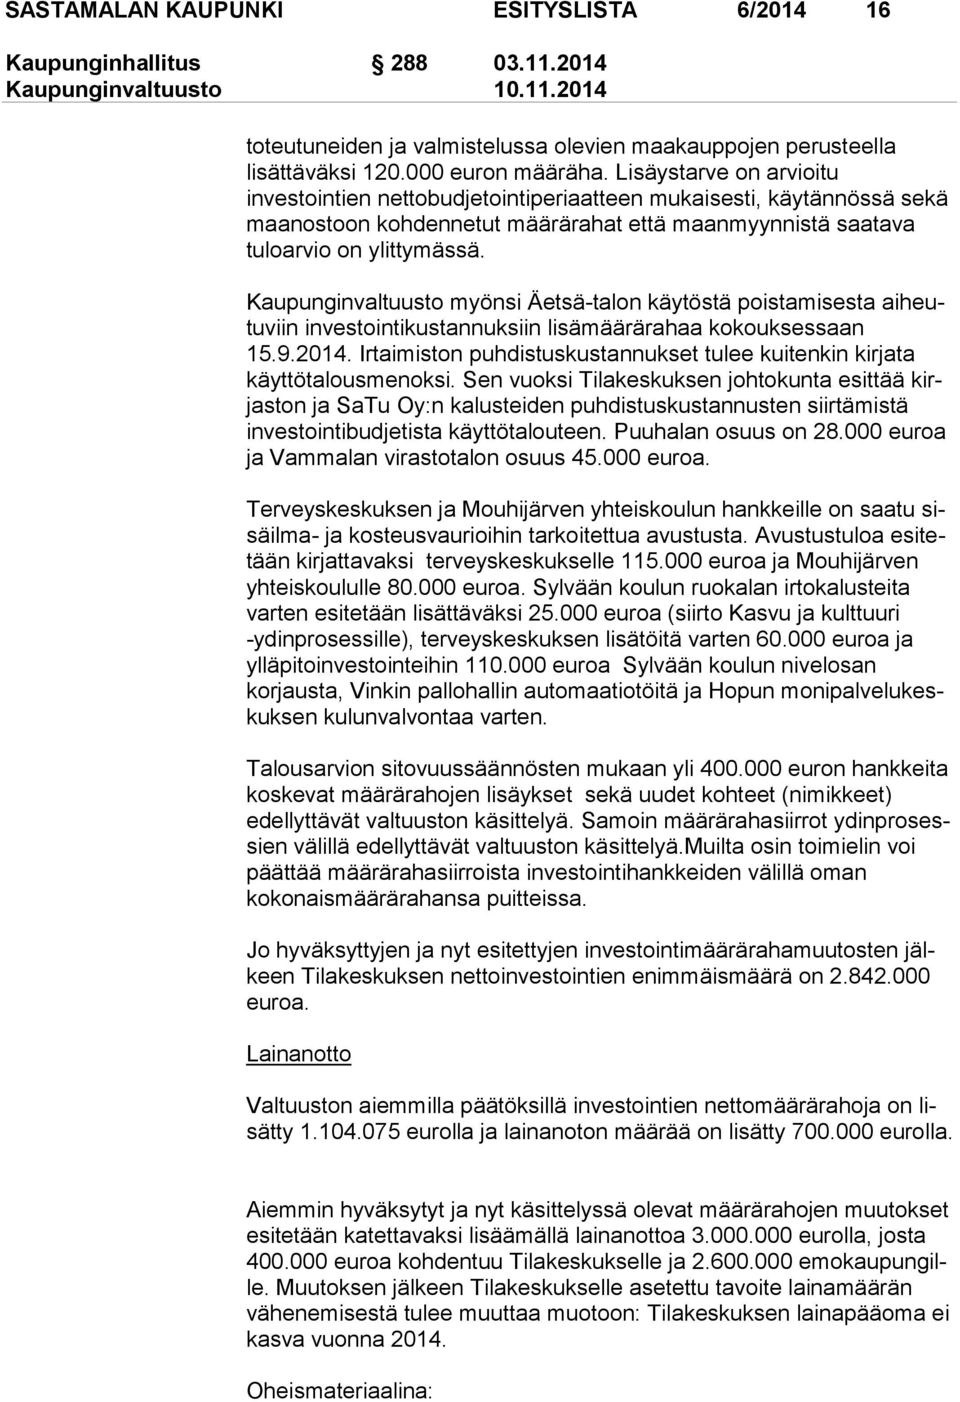 Kaupunginvaltuusto myönsi Äetsä-talon käytöstä poistamisesta ai heutu viin investointikustannuksiin lisämäärärahaa kokouksessaan 15.9.2014.